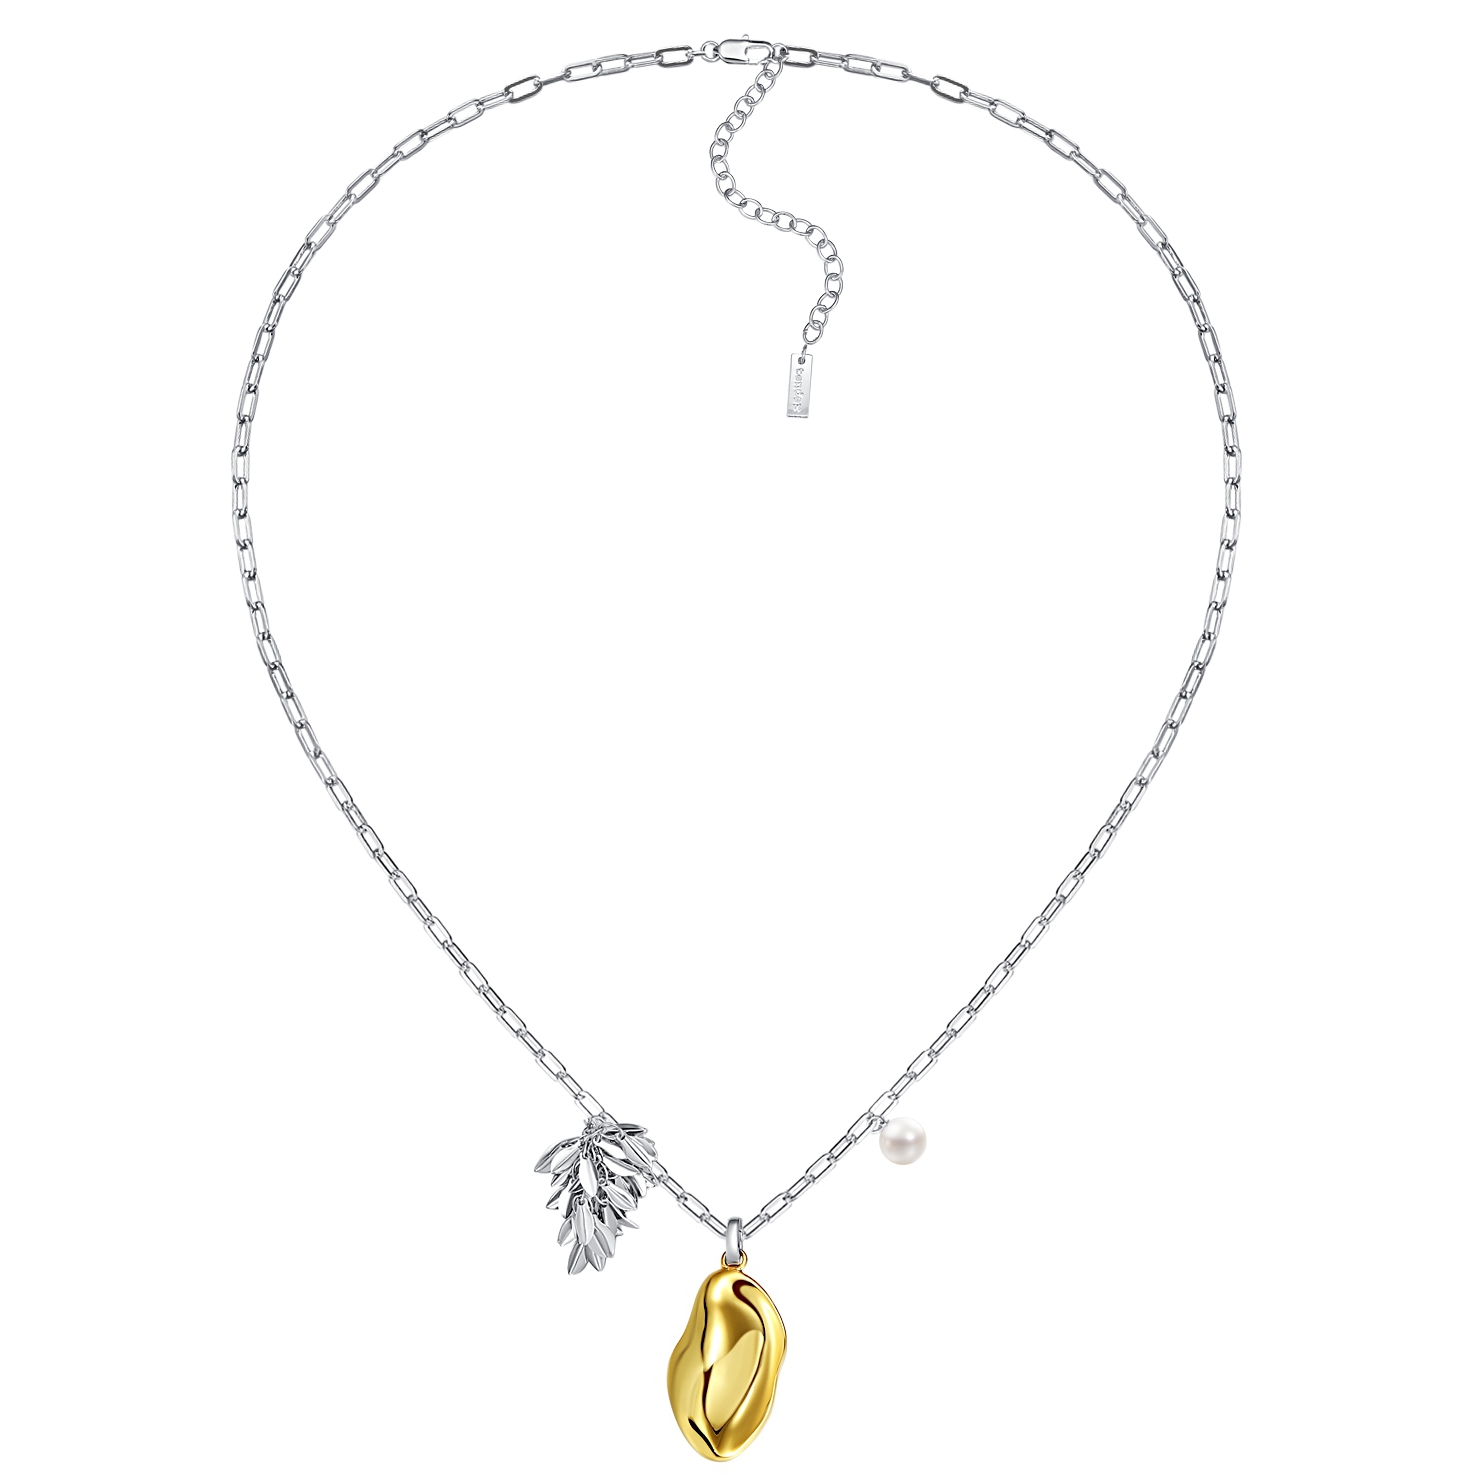 Tender Society醉舟系列金银双色异形流苏与天然珍珠长项链高级感